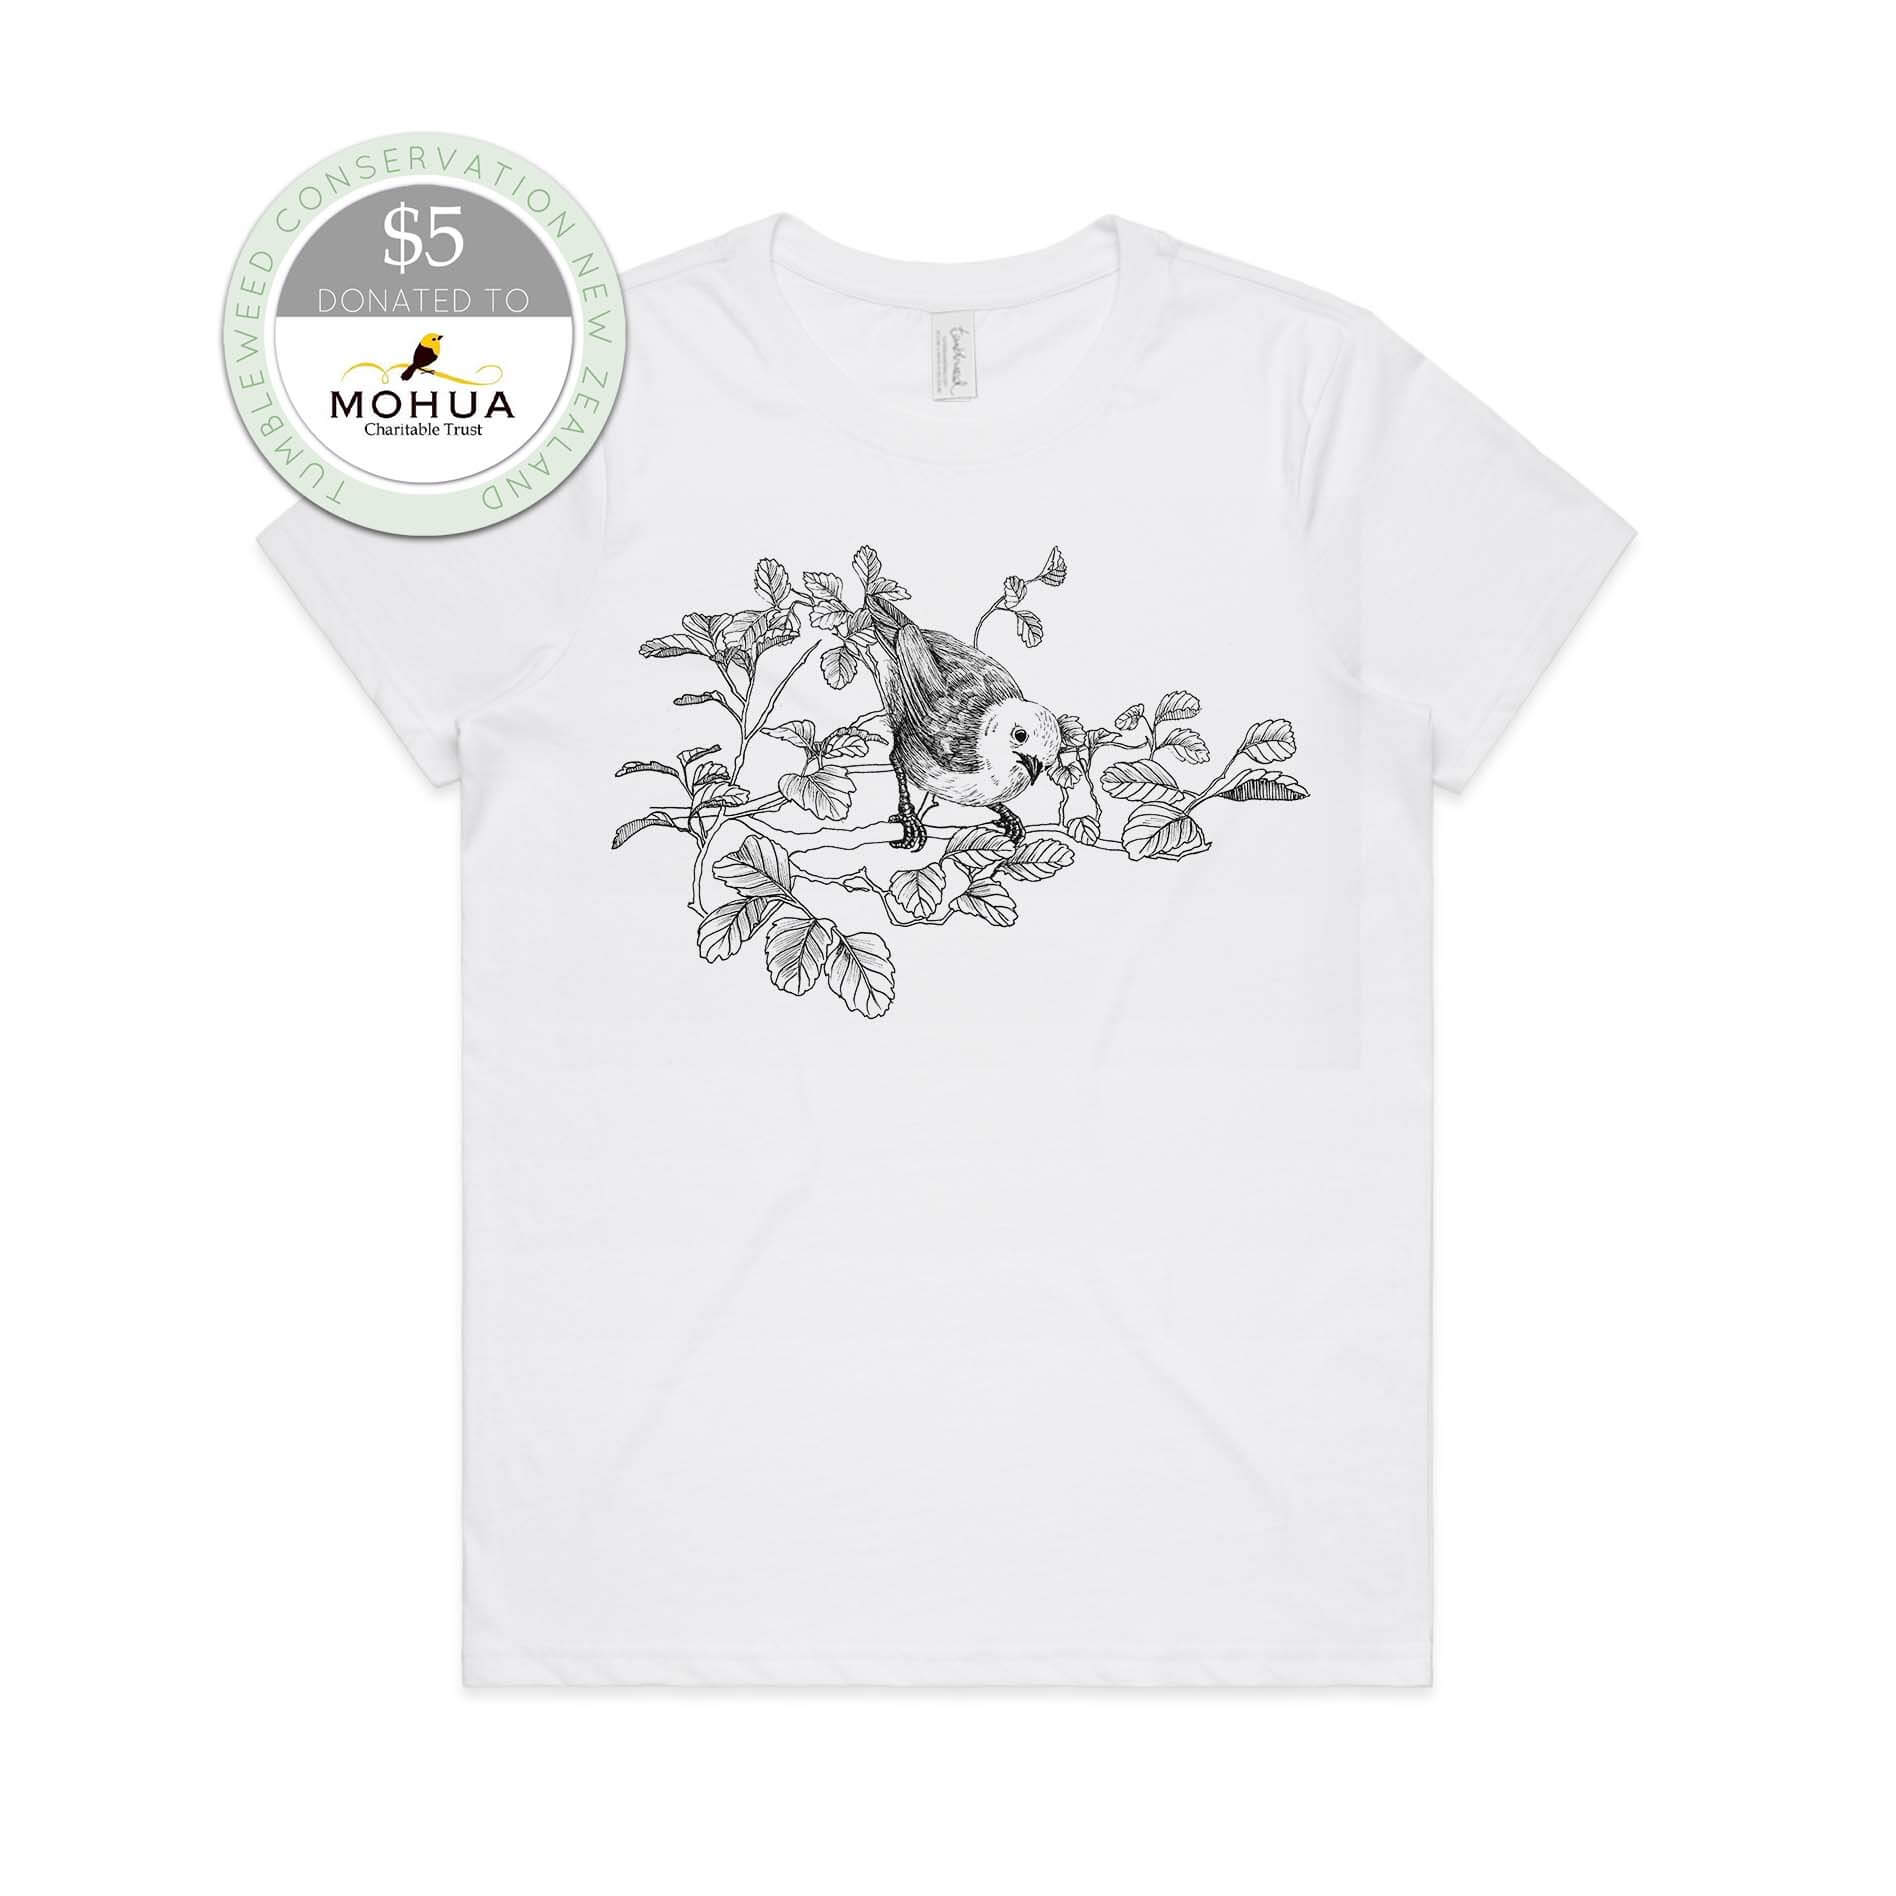 White, female t-shirt featuring a screen printed Mōhua/Yellowhead design.